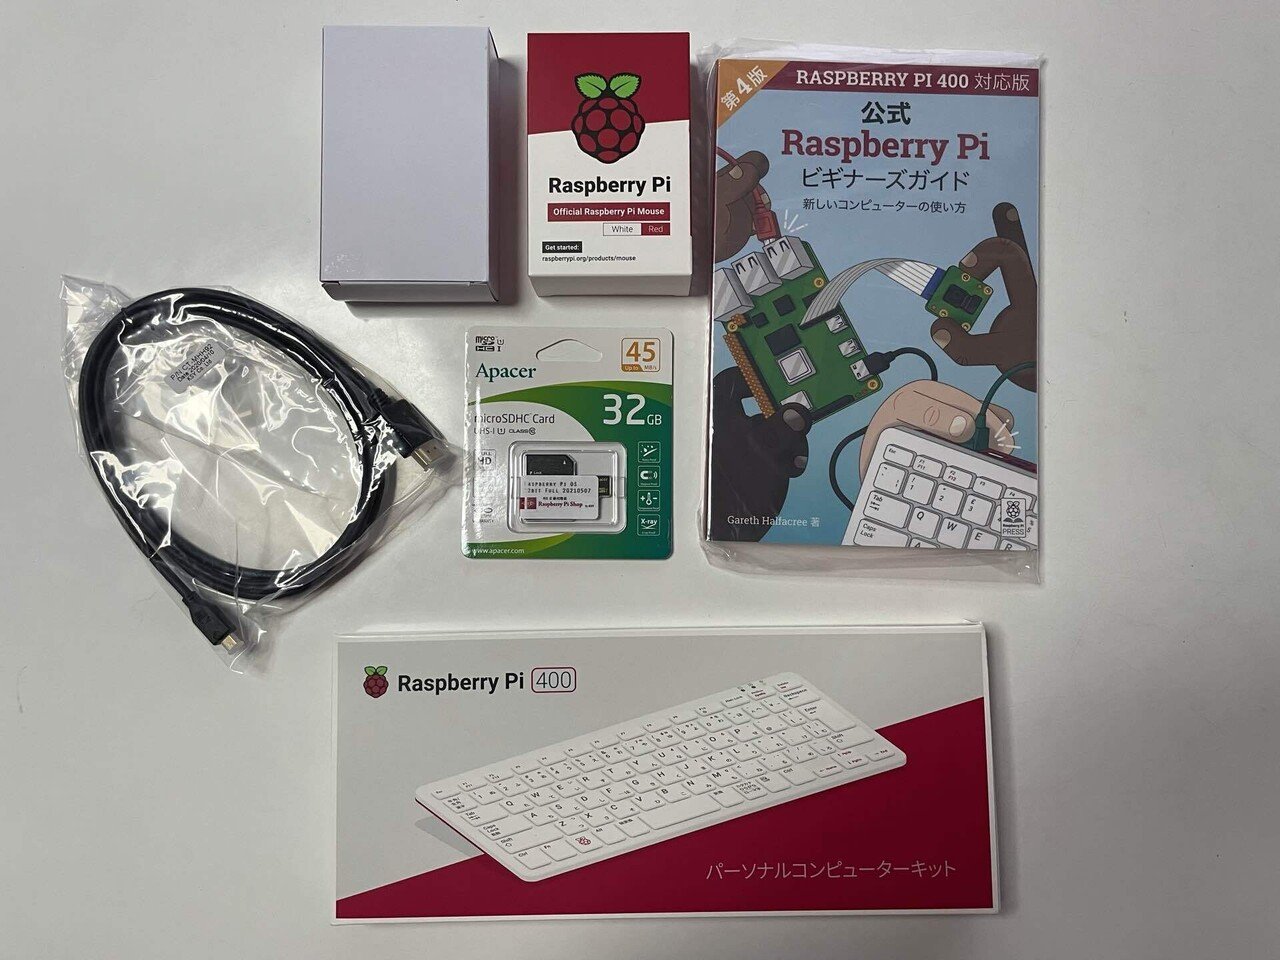 ラズベリーパイ400日本語版+スターターキット - デスクトップ型PC